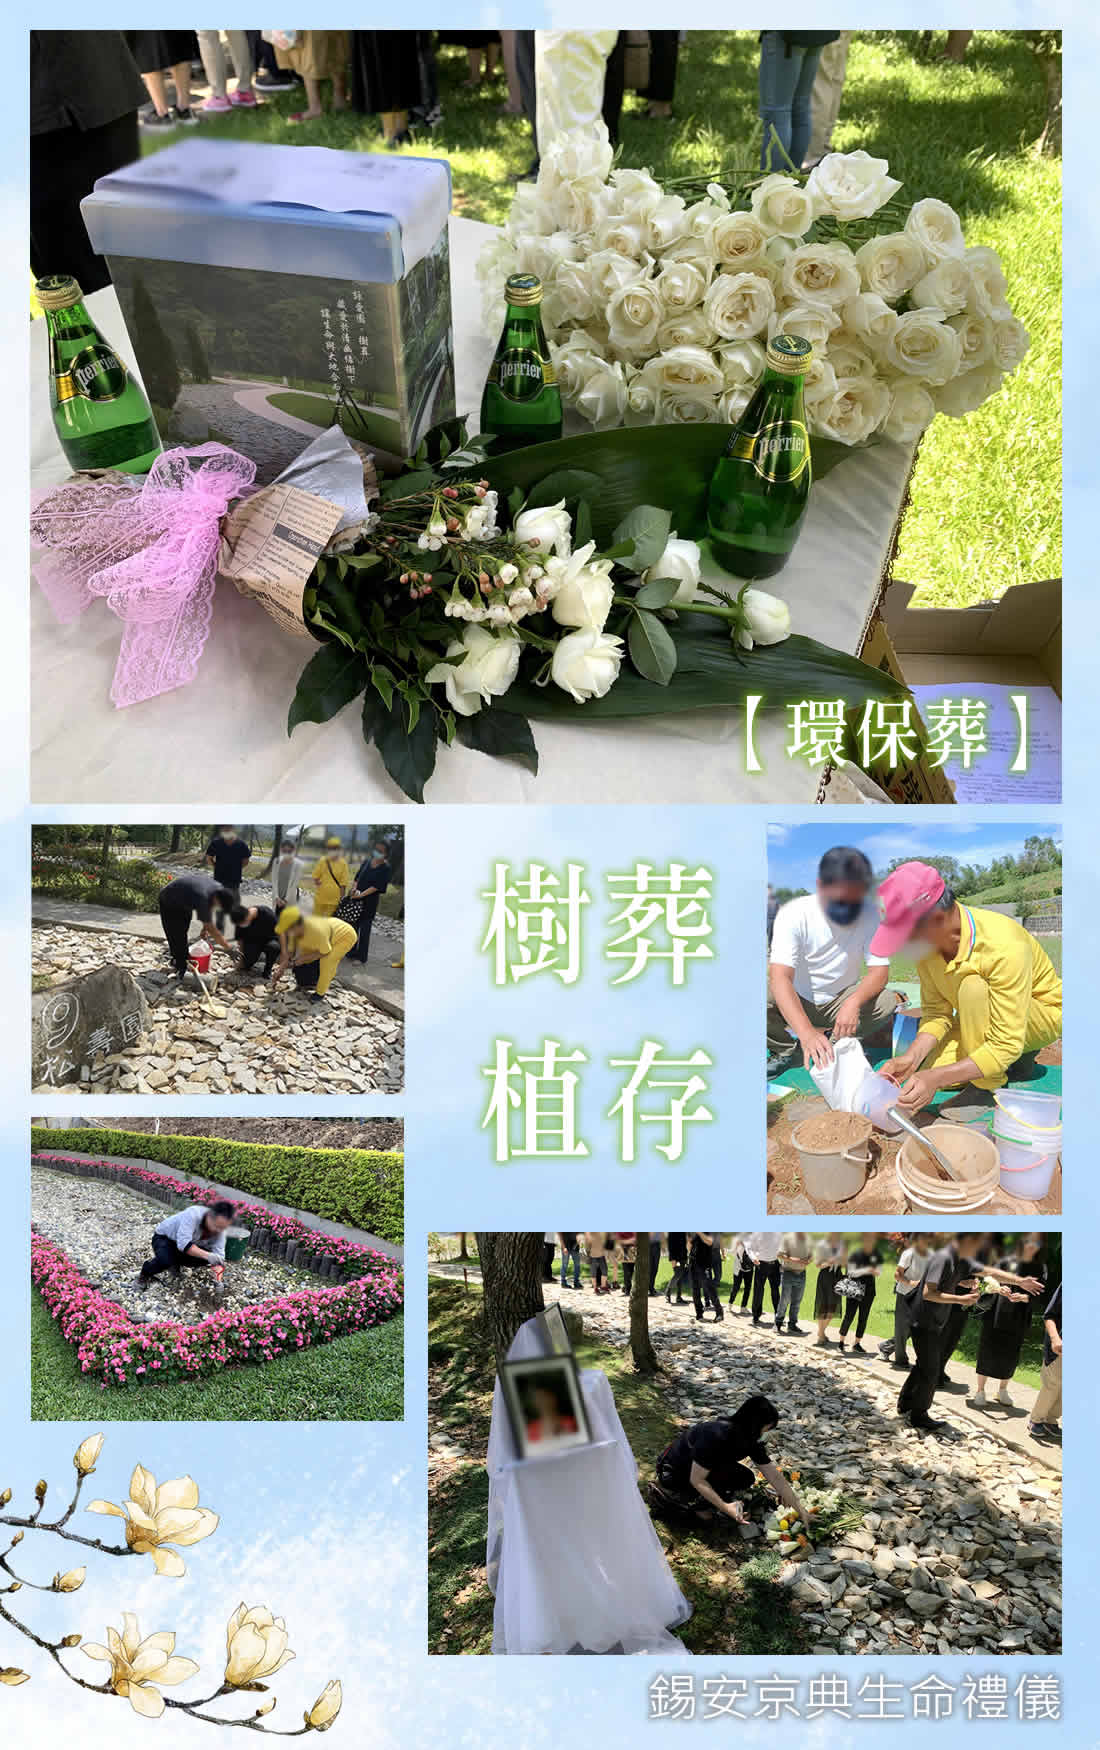 錫安京典生命禮儀提供環保葬-樹葬-花葬-植存-海葬-灑葬禮儀服務